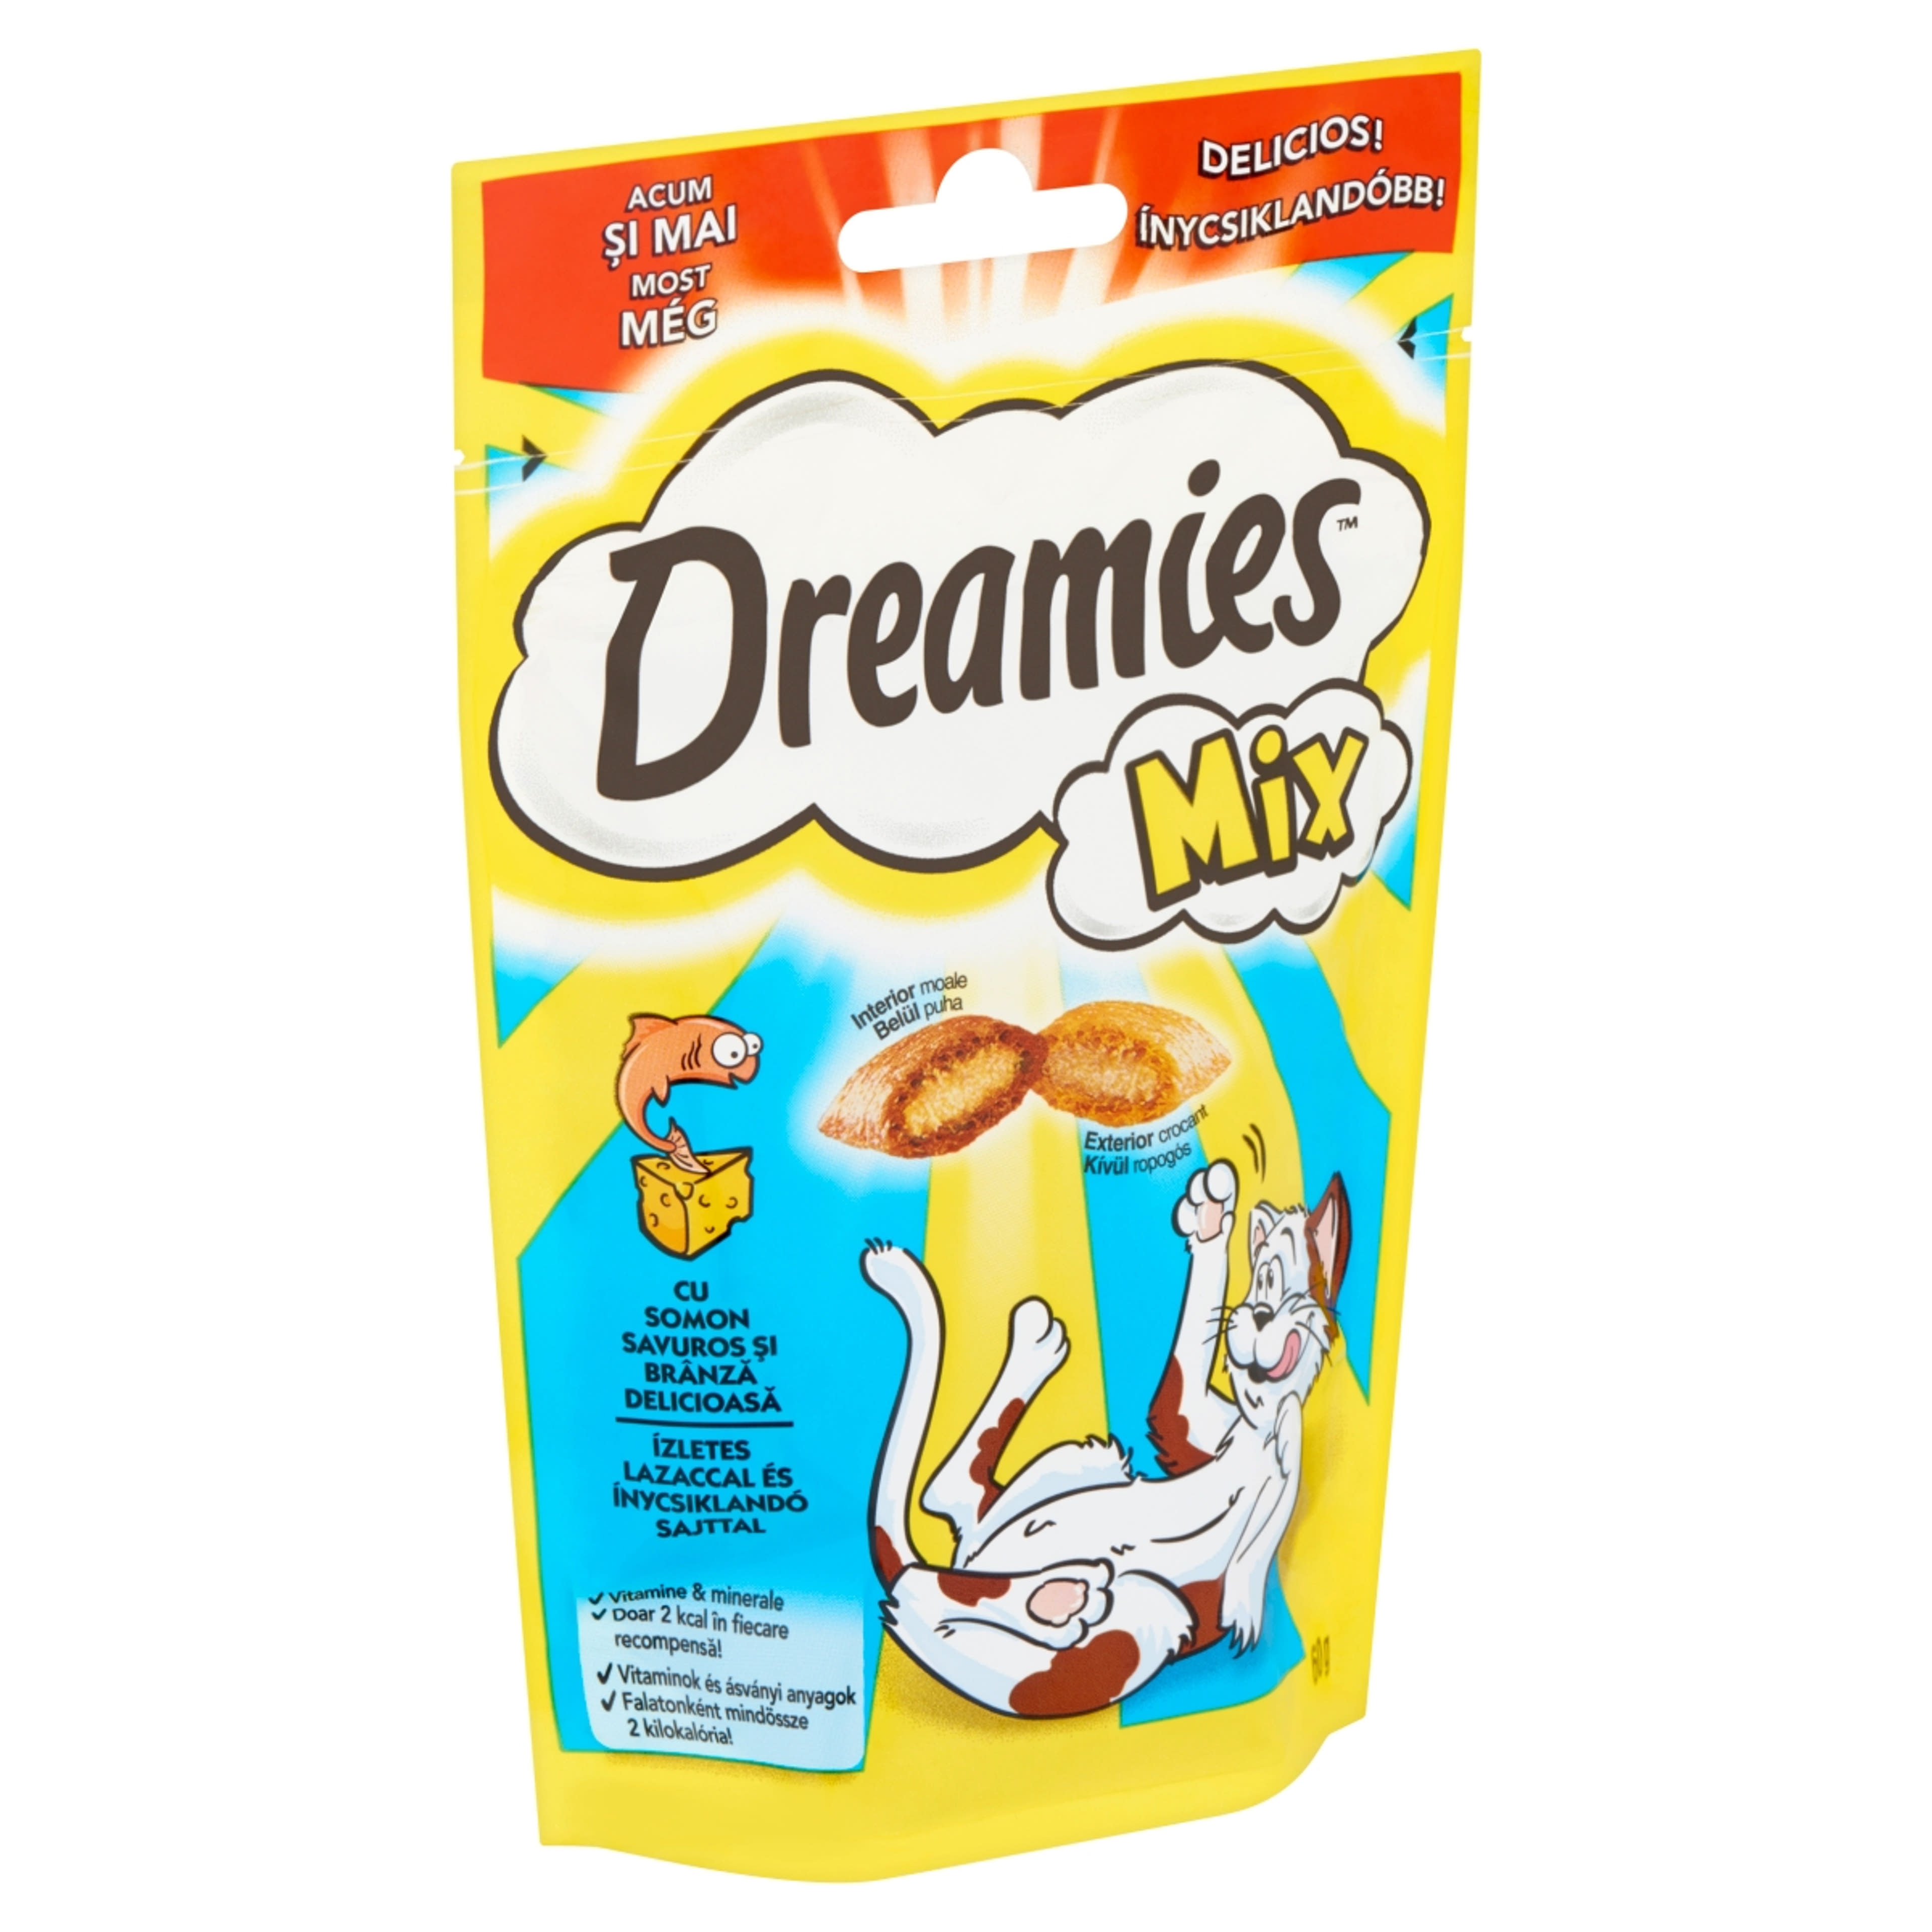 Dreamies Mix felnőtt és junior kiegészítő szárazeledel macskáknak, lazaccal és sajttal - 60 g-2